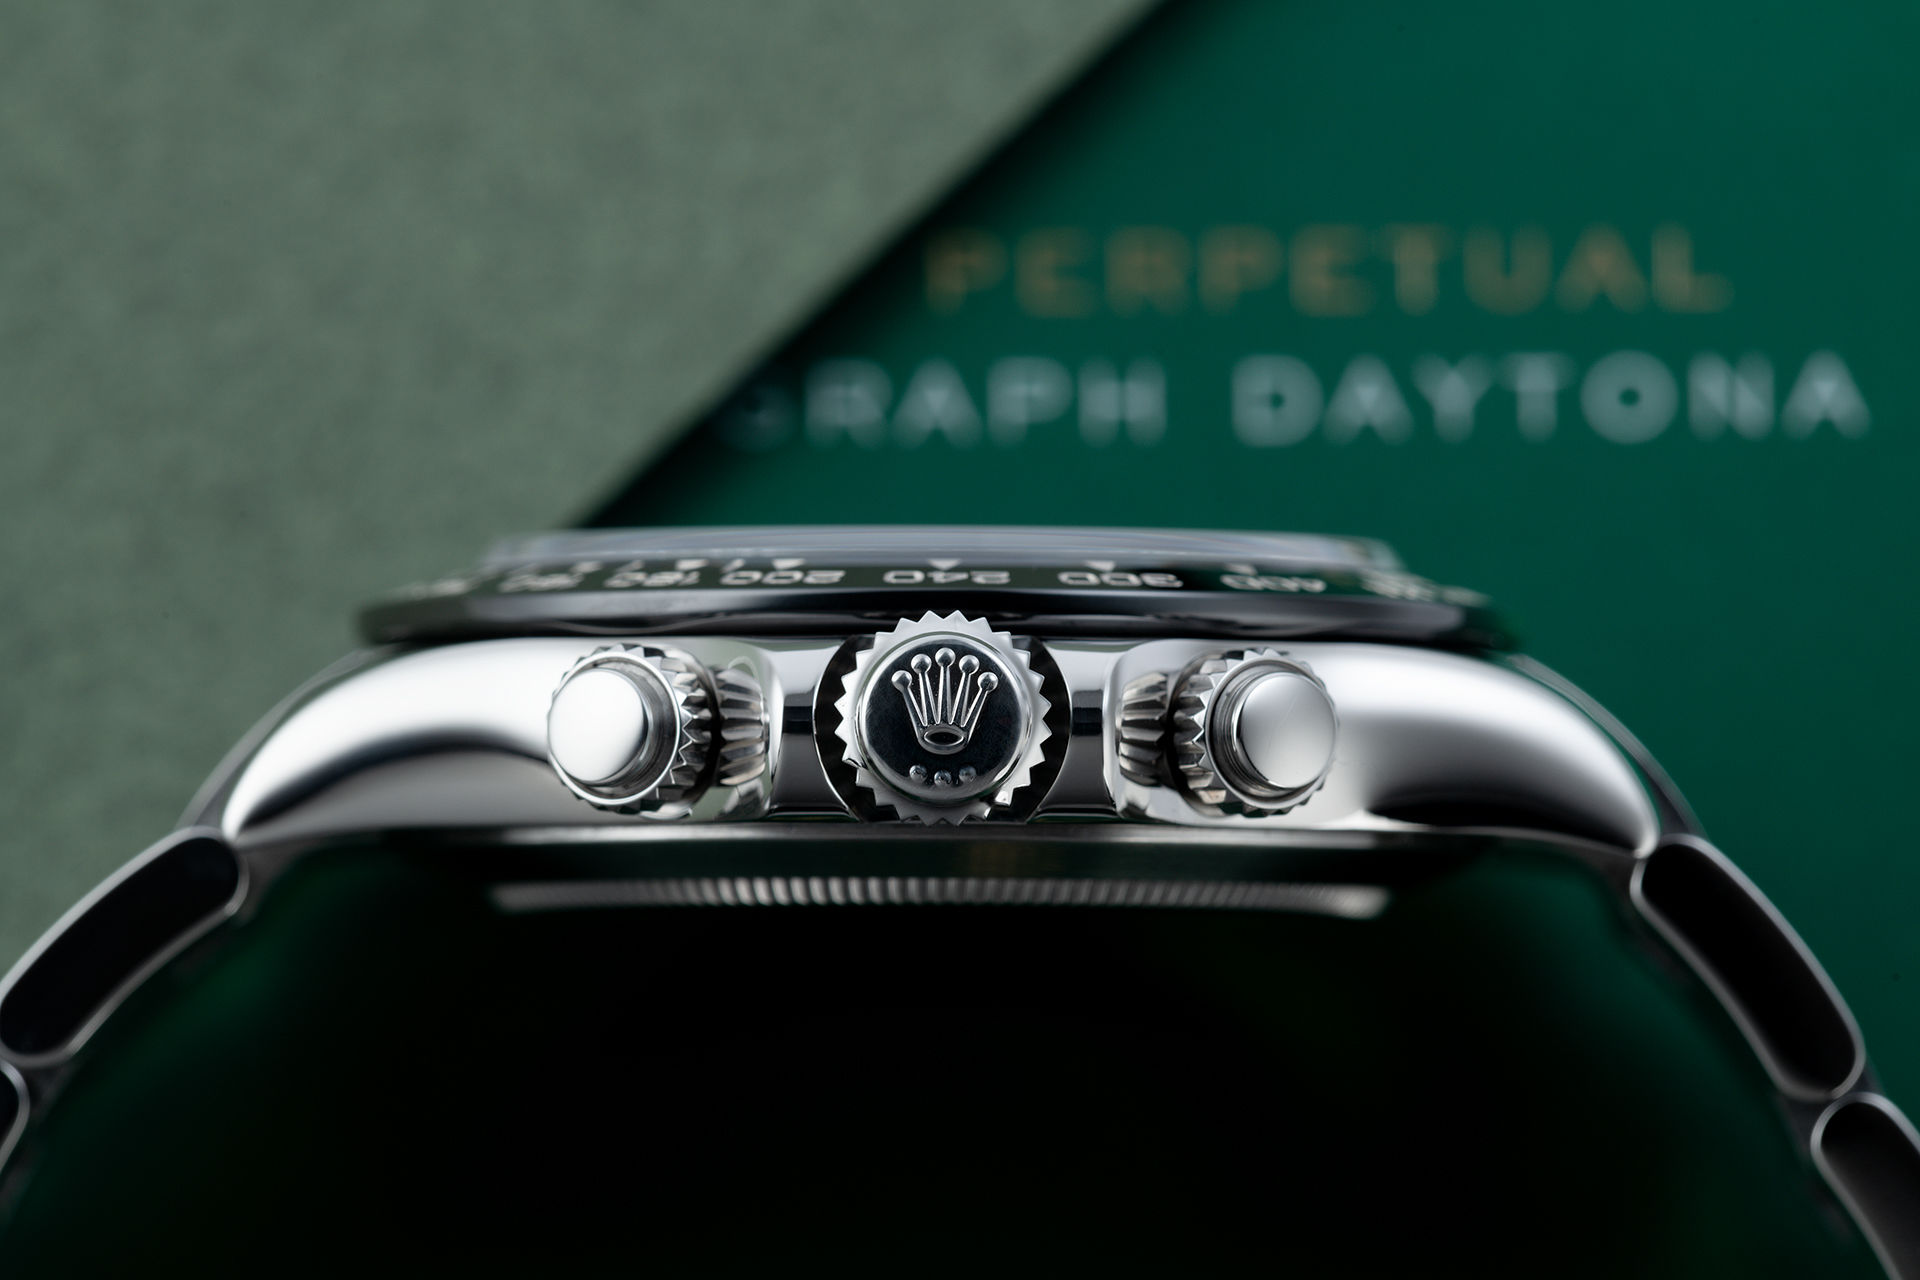 ref 116500LN | 'Cerachrom' Under 5 Year Rolex Warranty  | Rolex Cosmograph Daytona